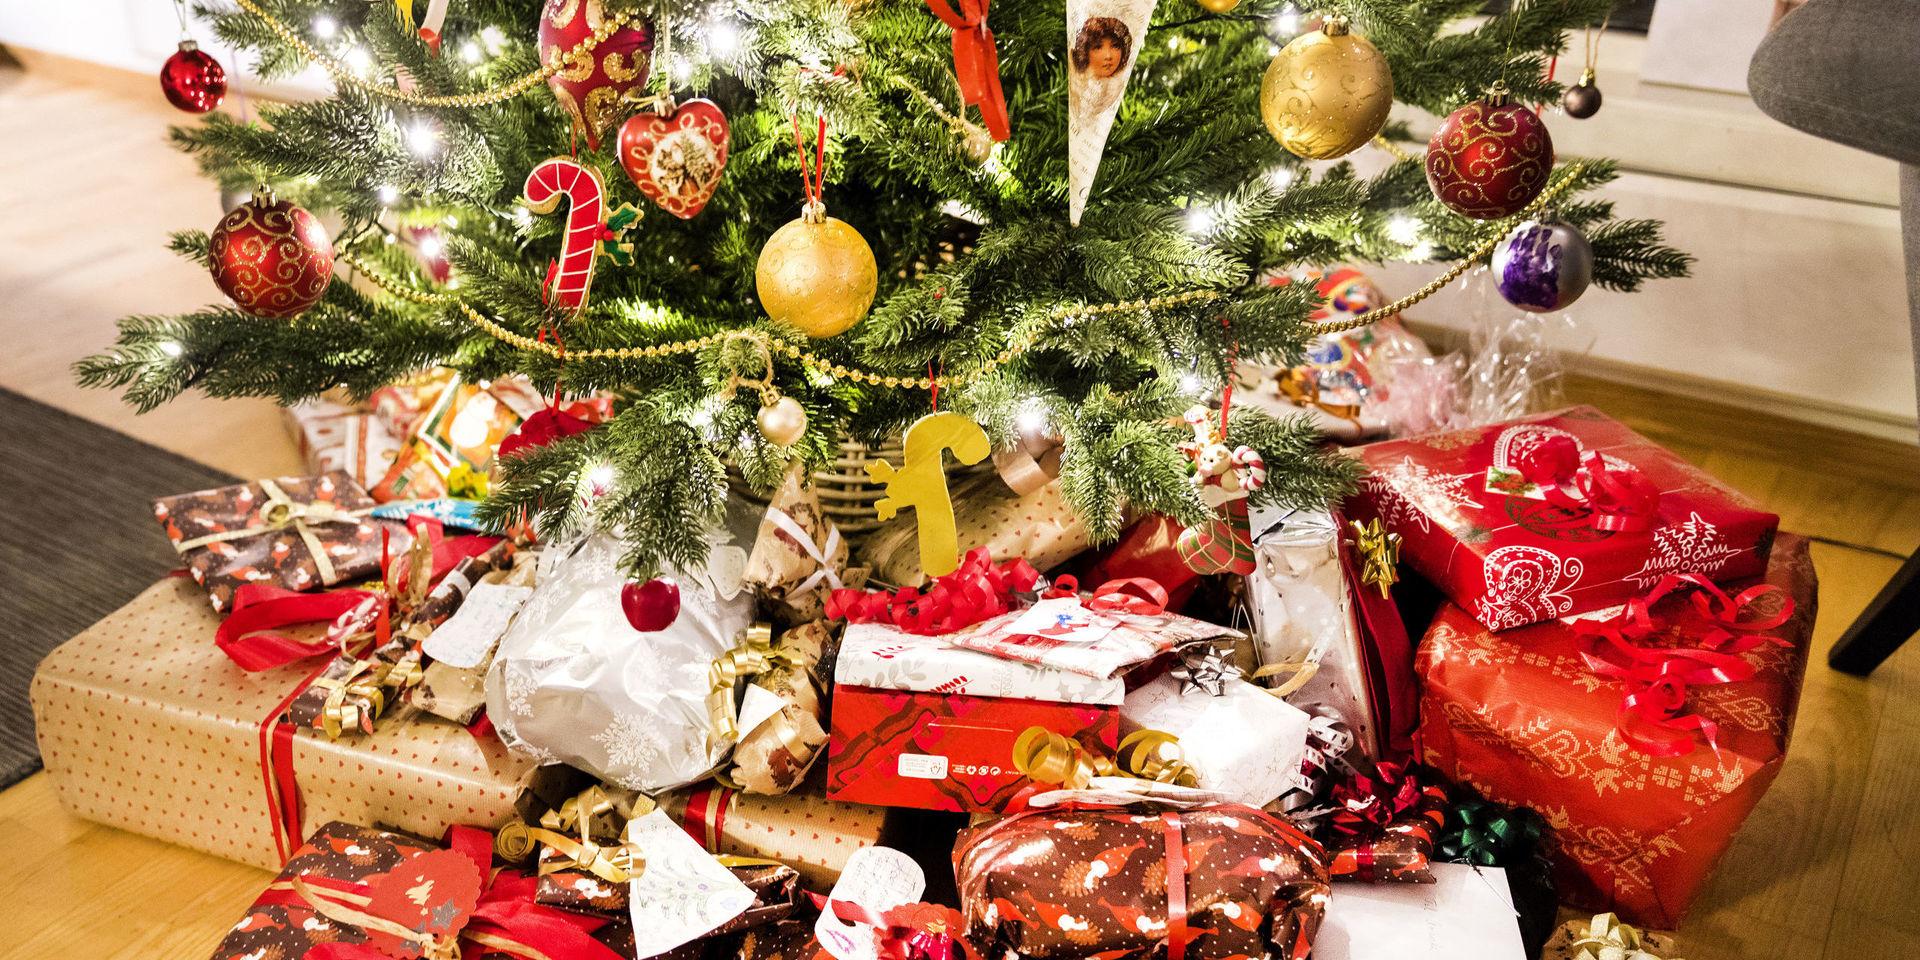 Svenskarna köpte julklappar för 21 miljarder förra året. Många vill dock dra ner på sina julklappskostnader.